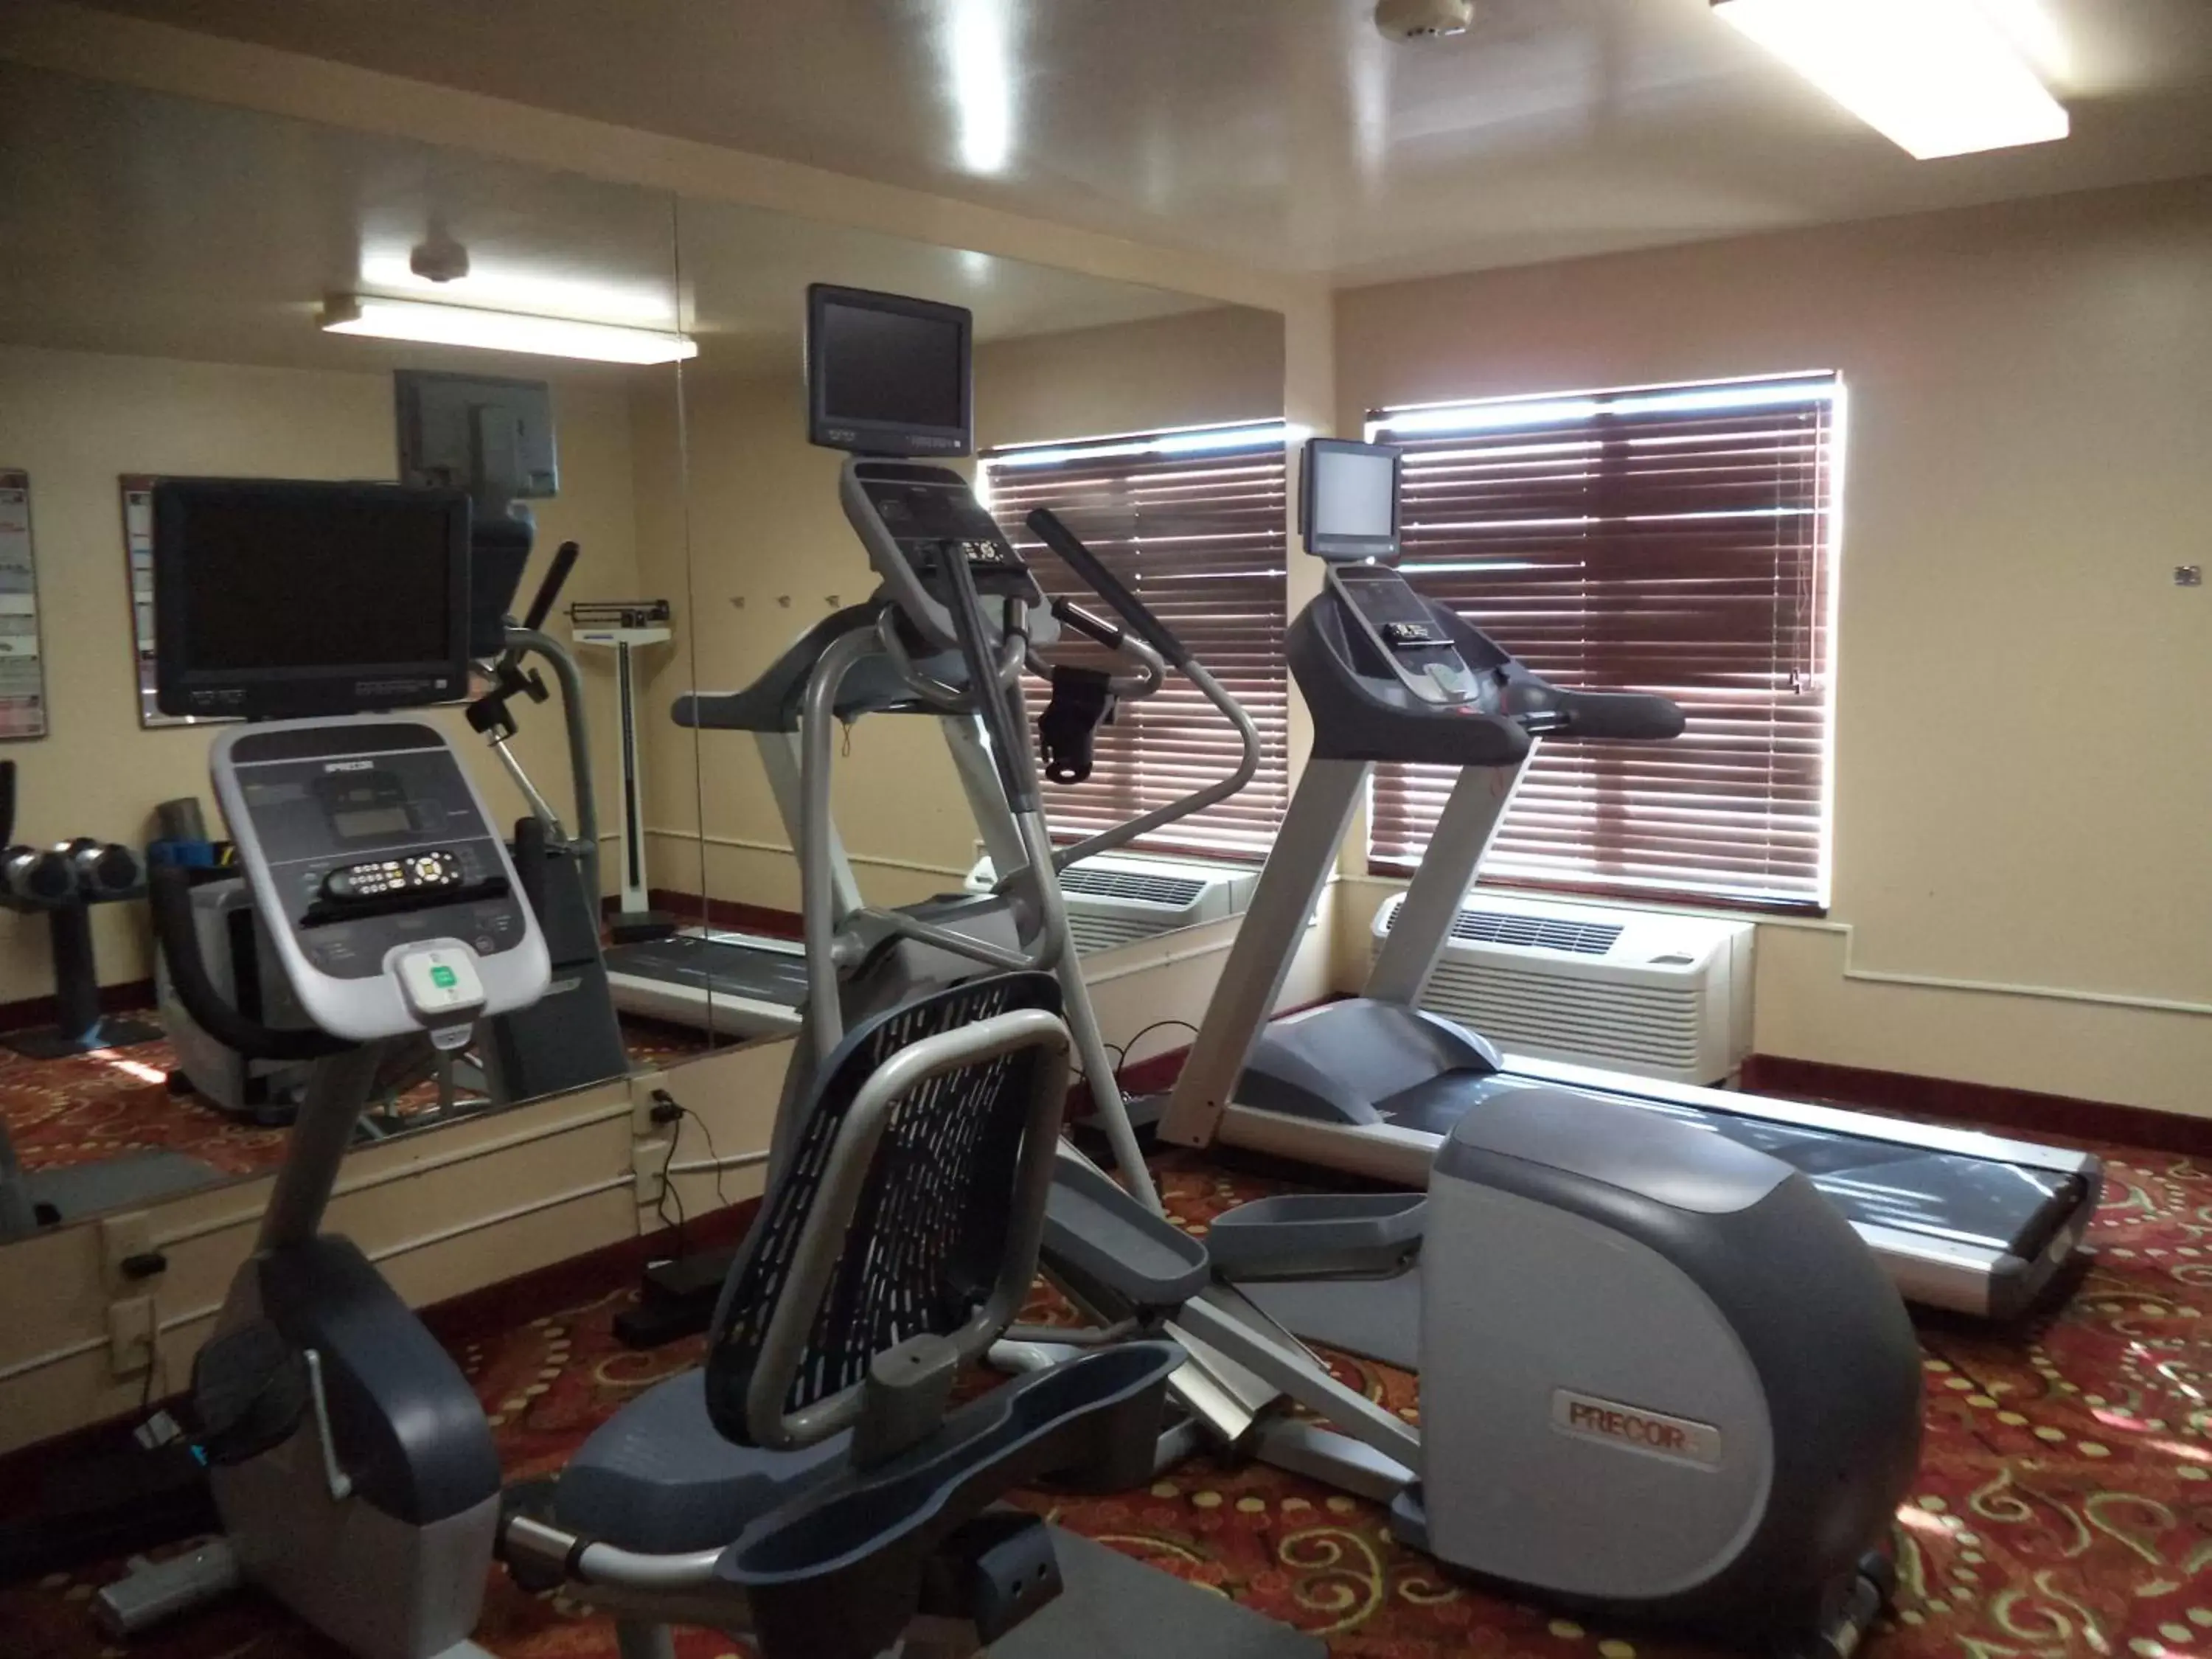 Fitness centre/facilities, Fitness Center/Facilities in Holiday Inn Express La Junta, an IHG Hotel